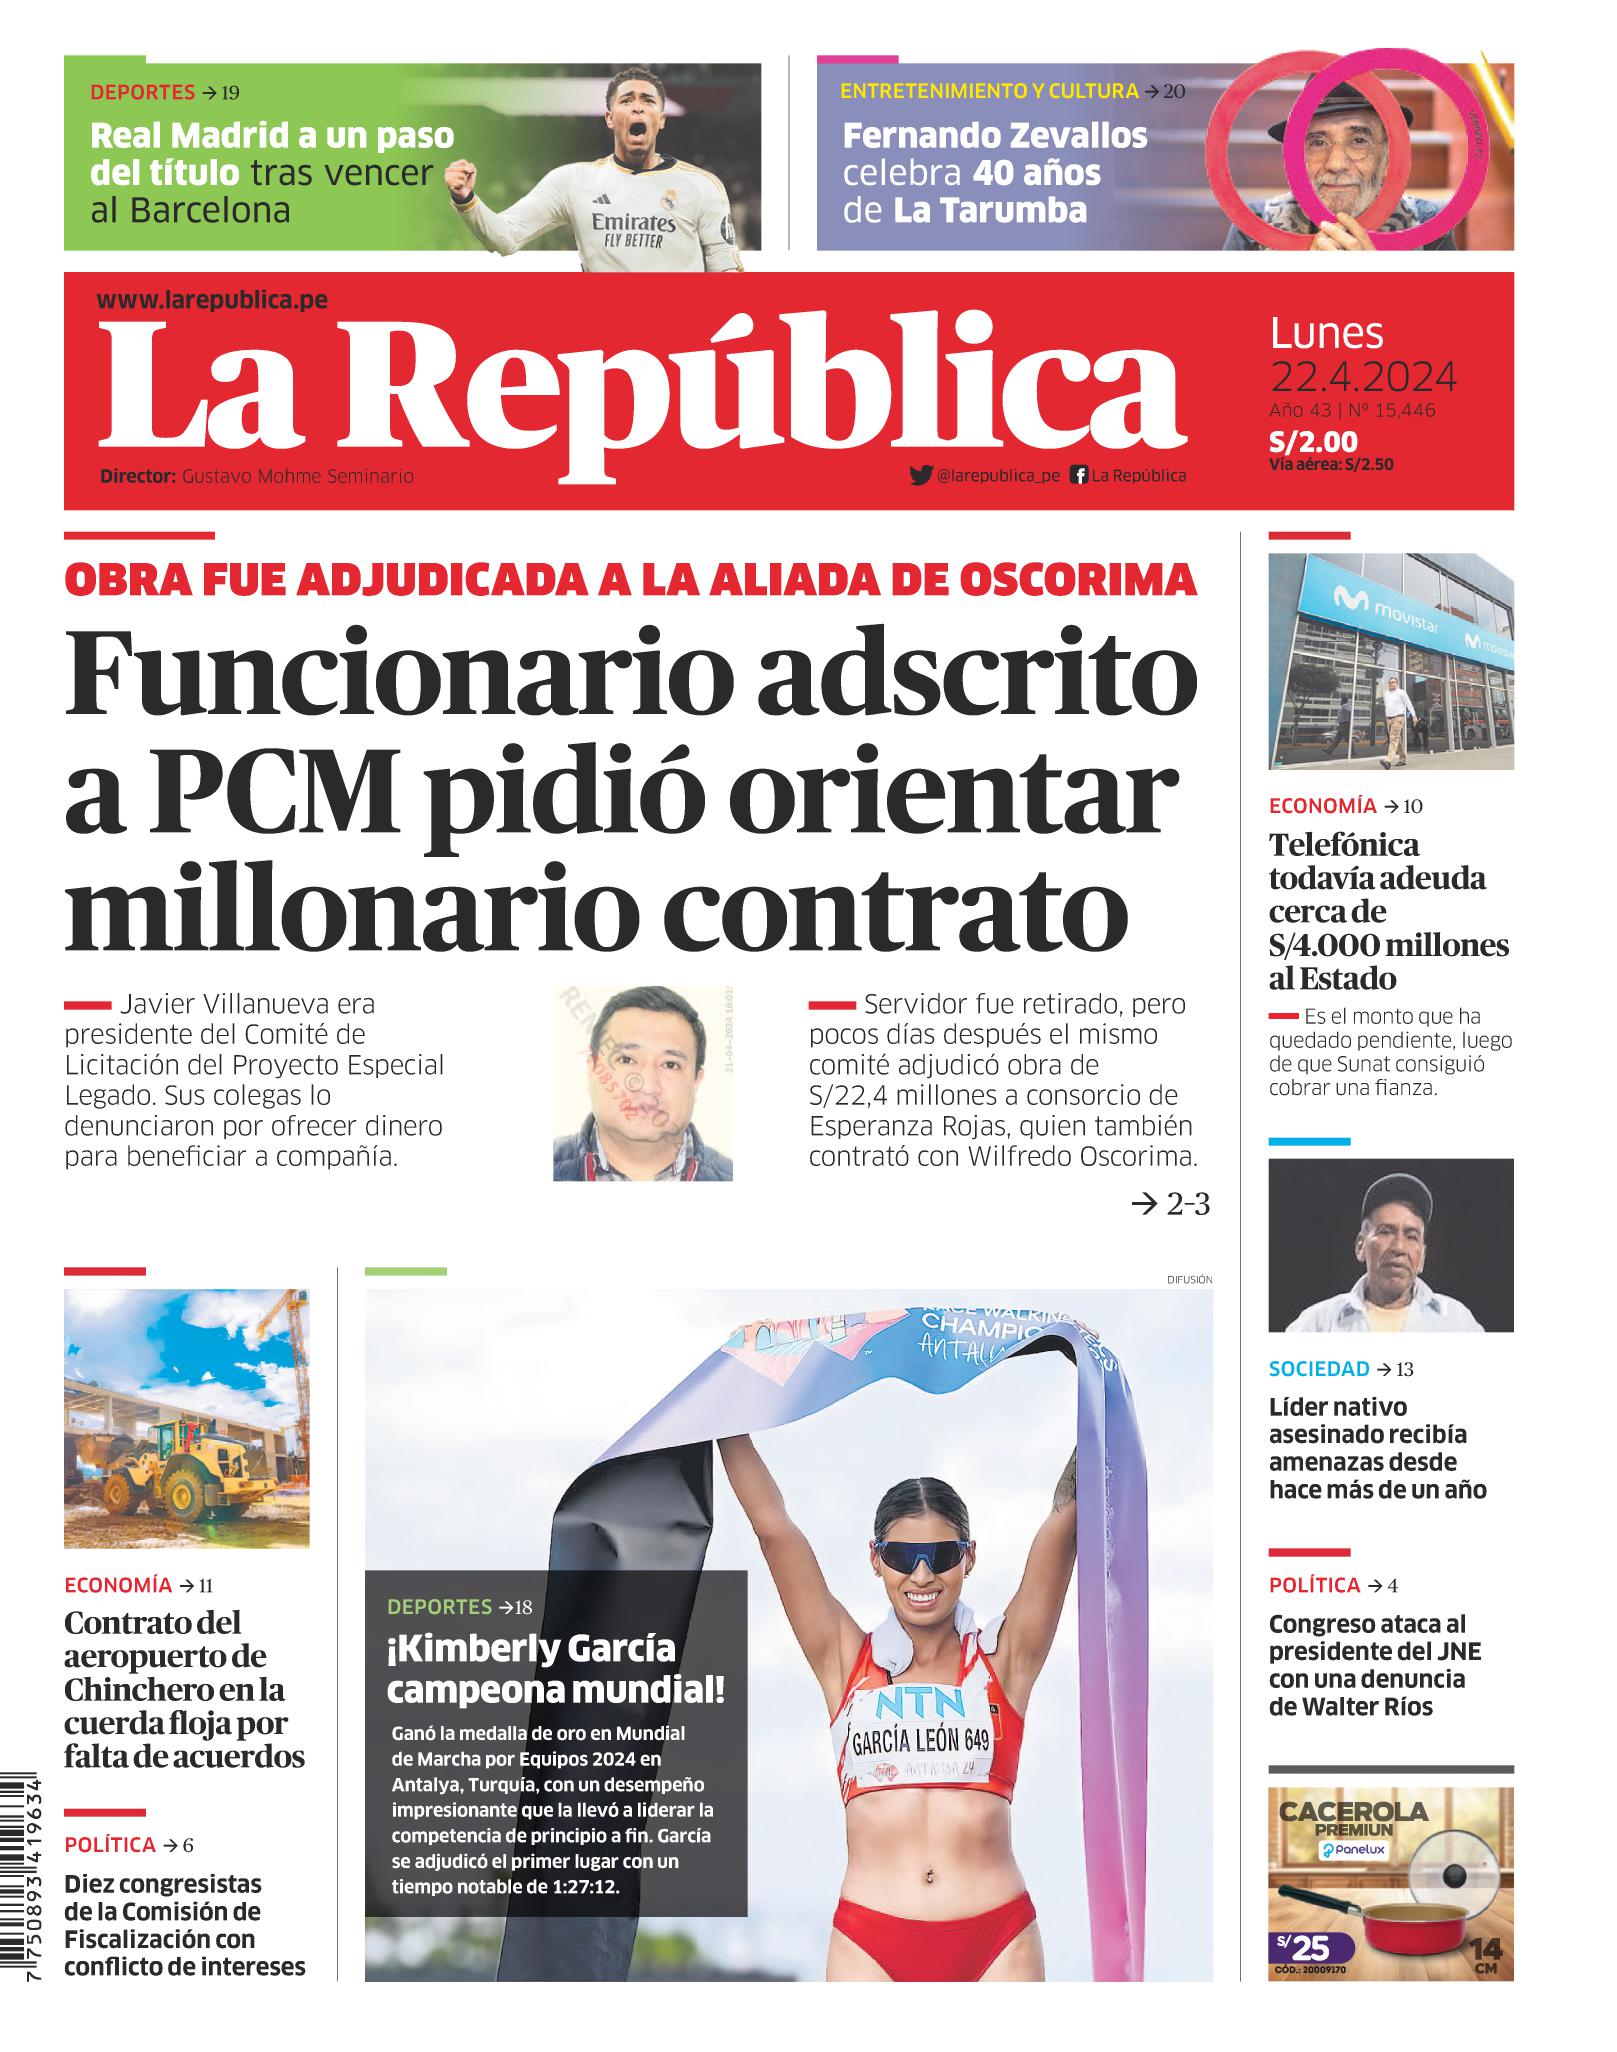 Noticias de política del Perú - Página 21 01